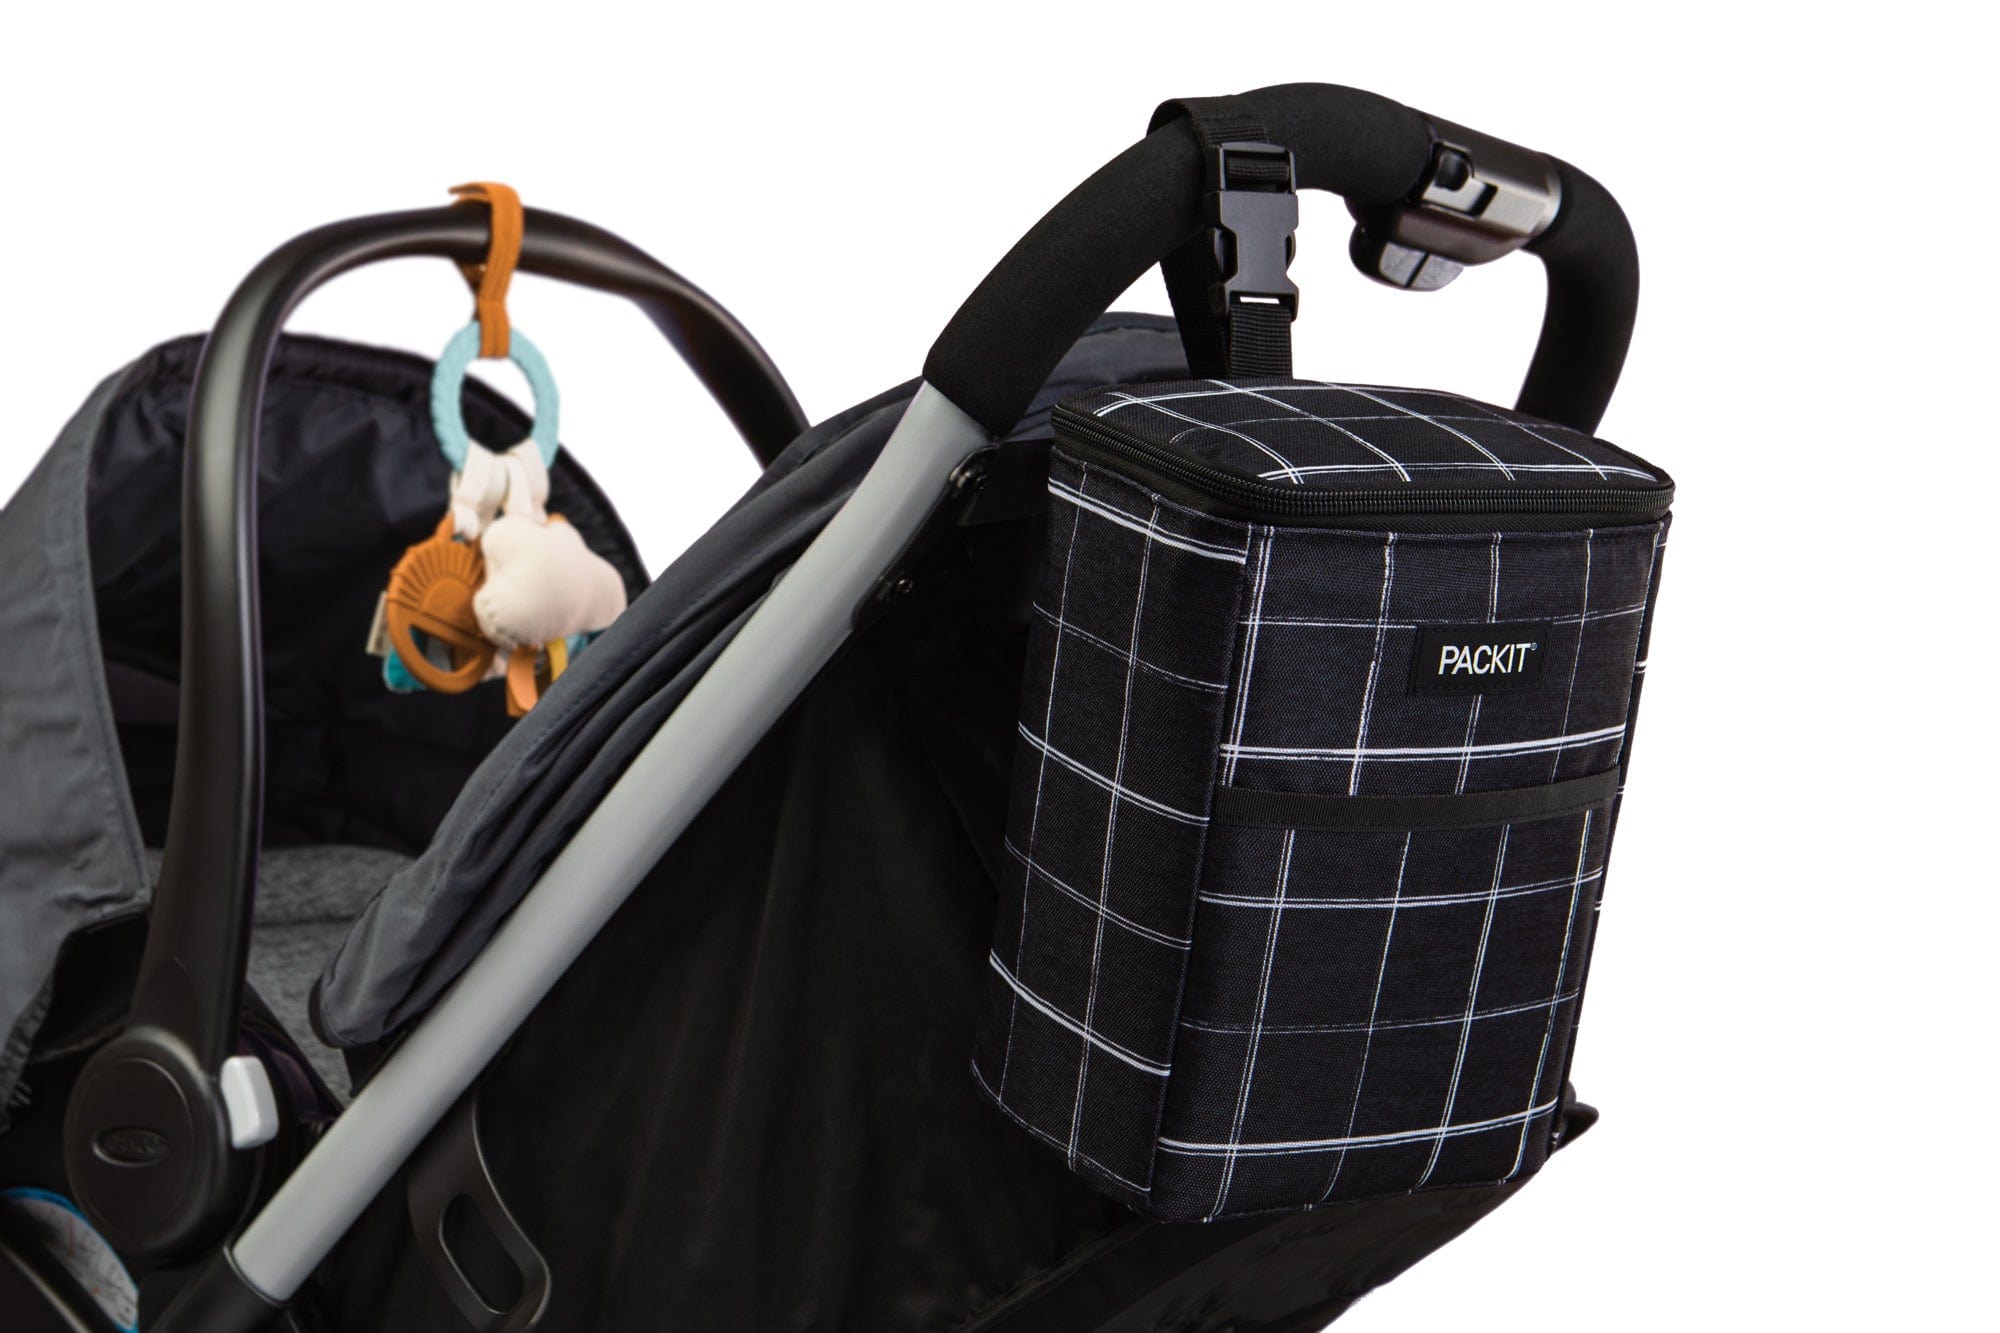 Dry ice packs, Gel packs & Cooler bags to transport Breast Milk